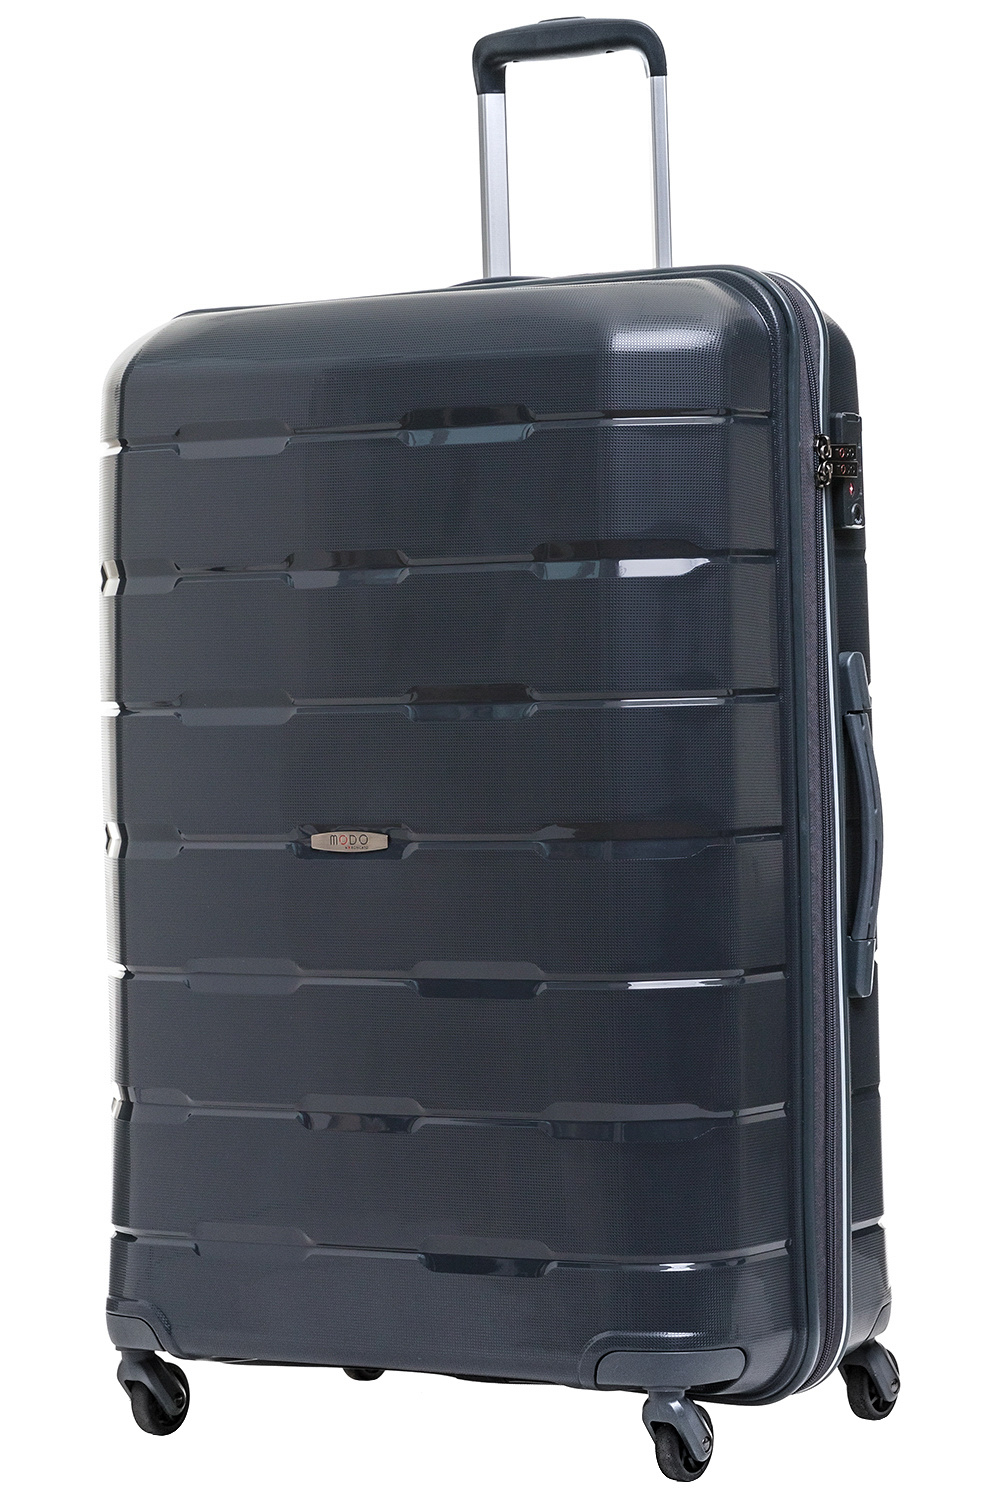 Размер чемодана большой L(70-100 см), что отлично подойдёт для длительных или семейных поездок.